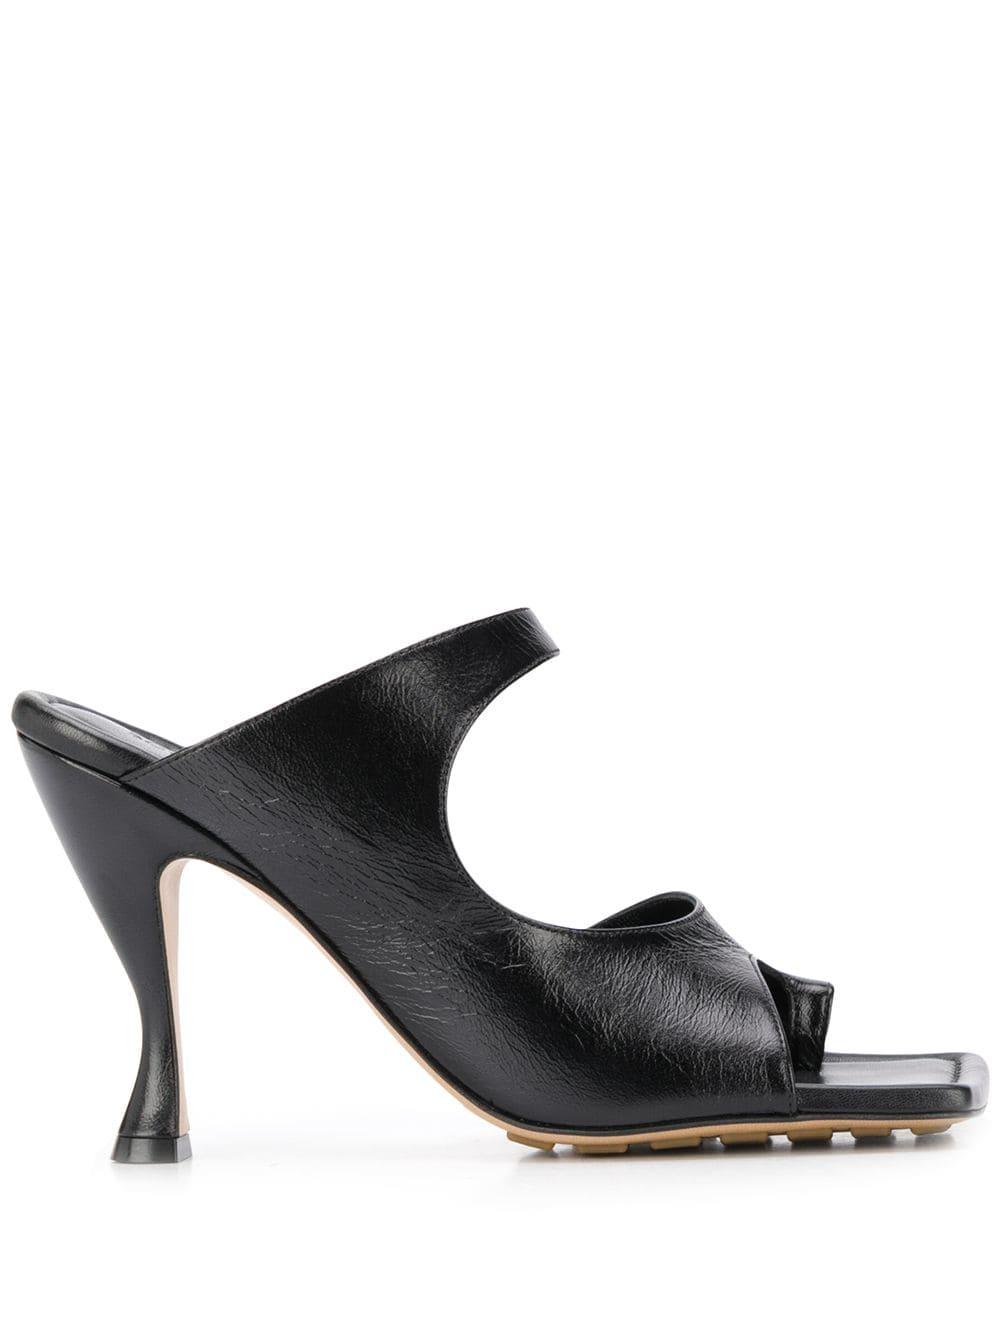 Bottega Veneta Square Toe Strappy 90mm Sandals in Black | Lyst